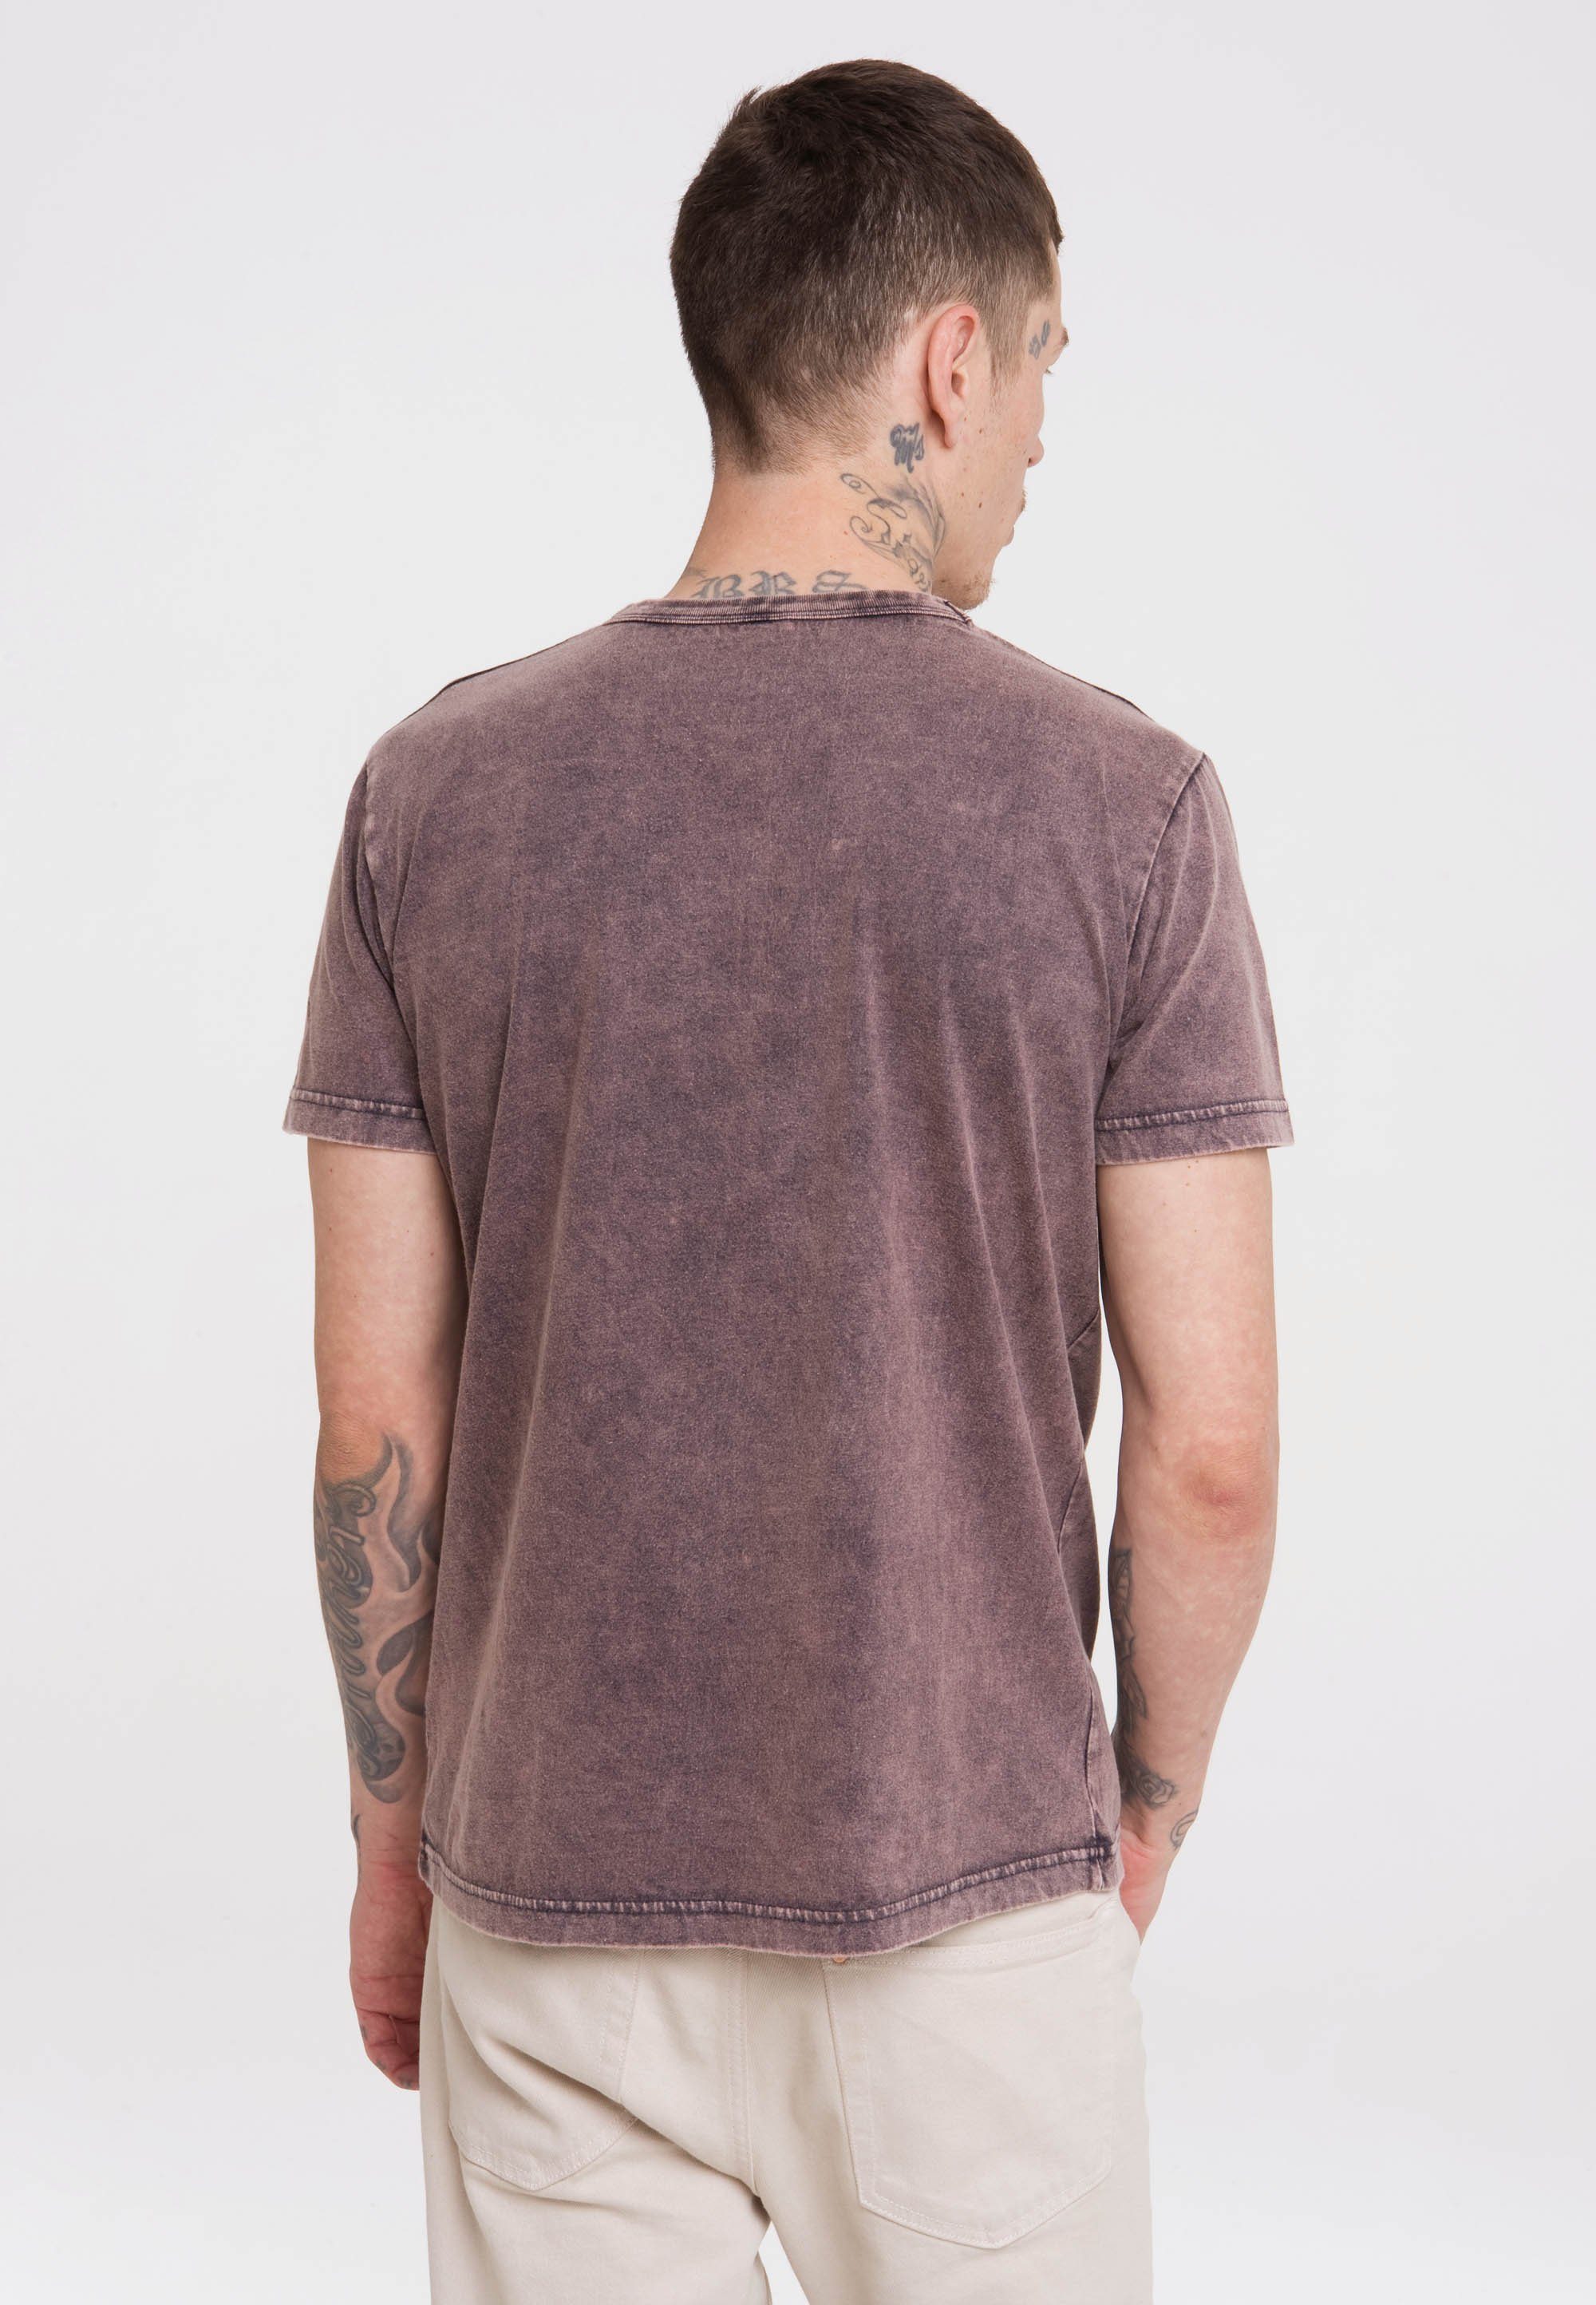 Maulwurf T-Shirt Print violett LOGOSHIRT kleine lizenziertem Der mit